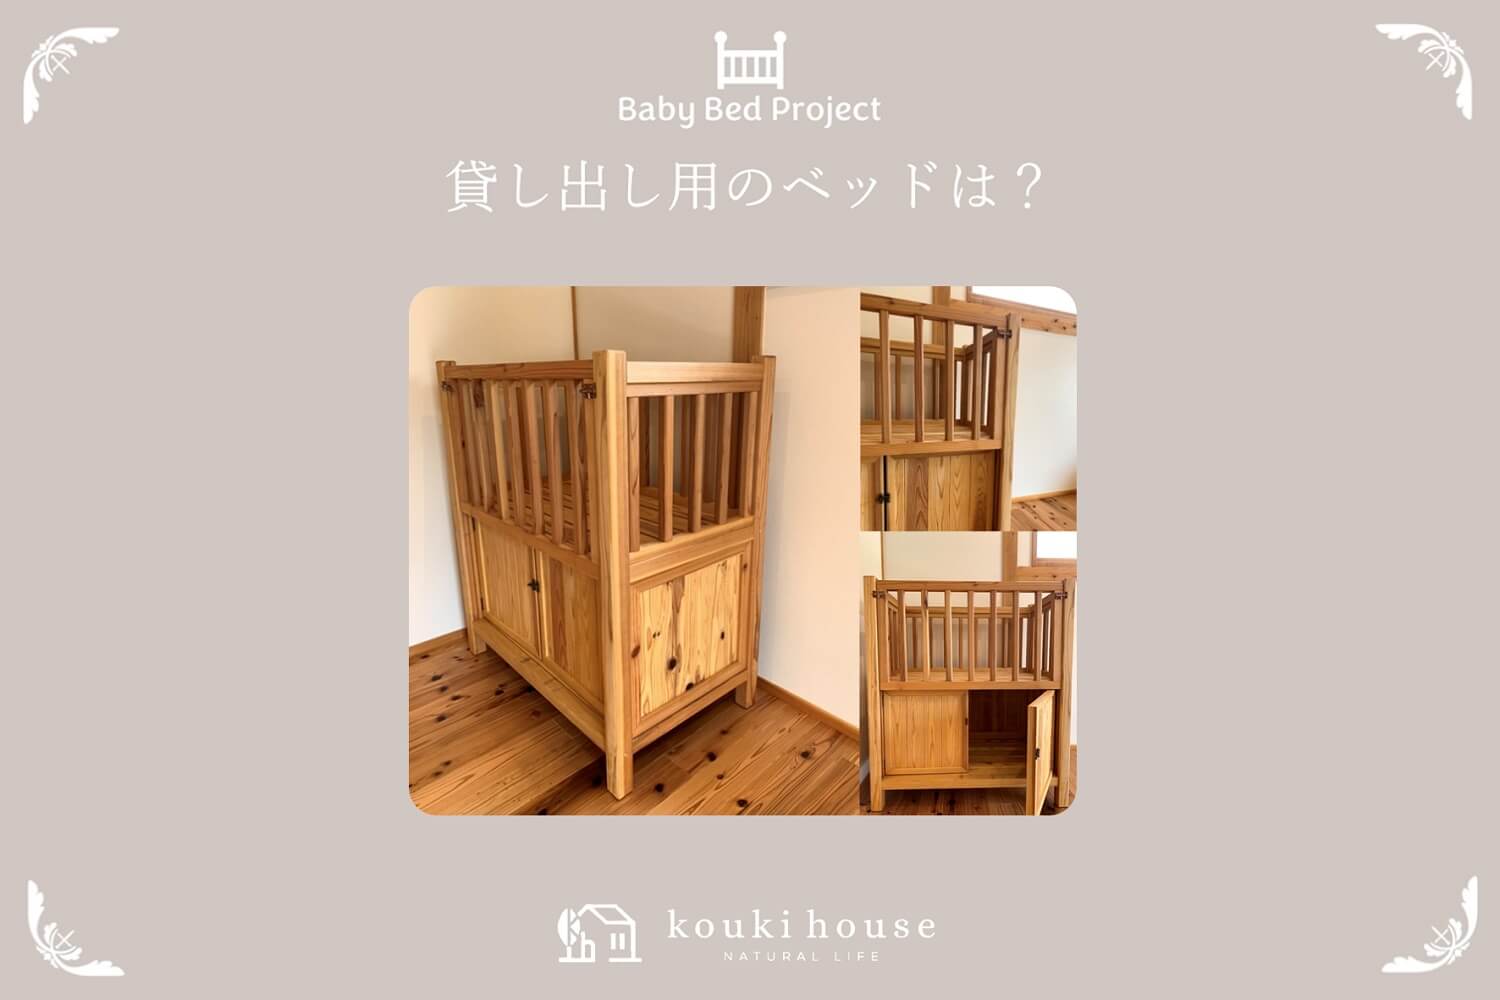 松阪市 熊野市へ地域貢献したい幸輝ハウスのベビーベッドプロジェクト　貸し出すベッド